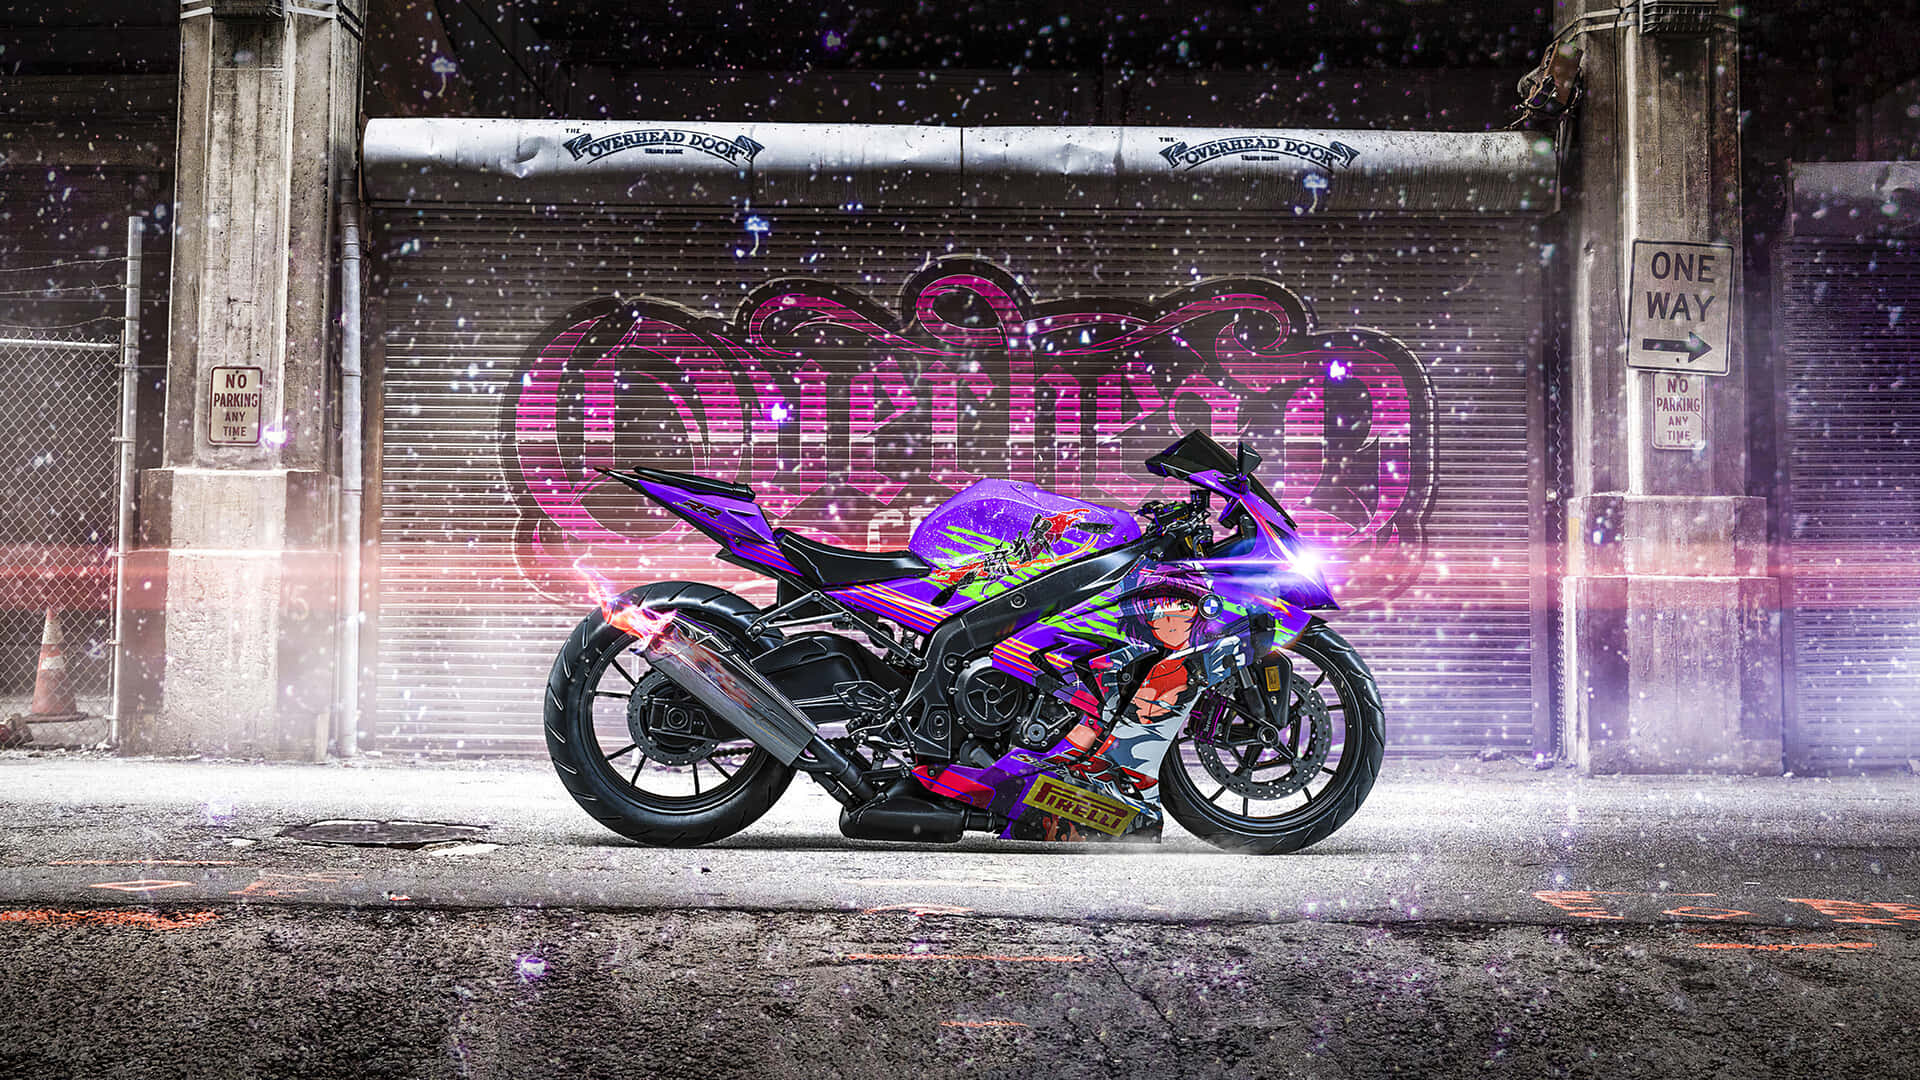 2560x1440 Motorrad Wallpaper